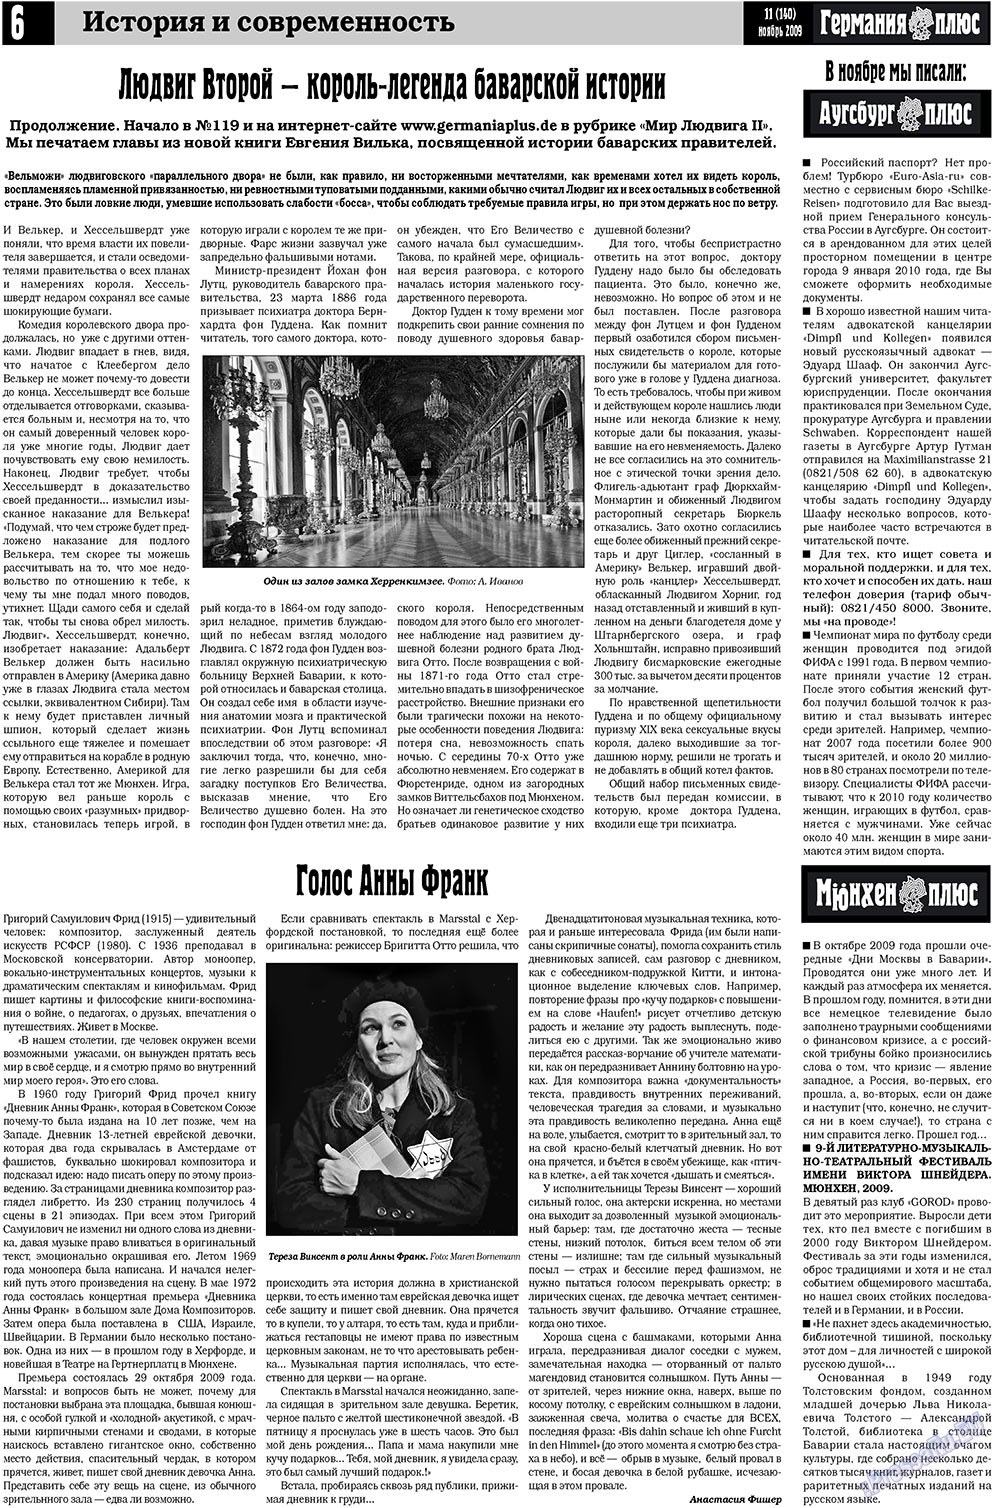 Германия плюс, газета. 2009 №11 стр.6